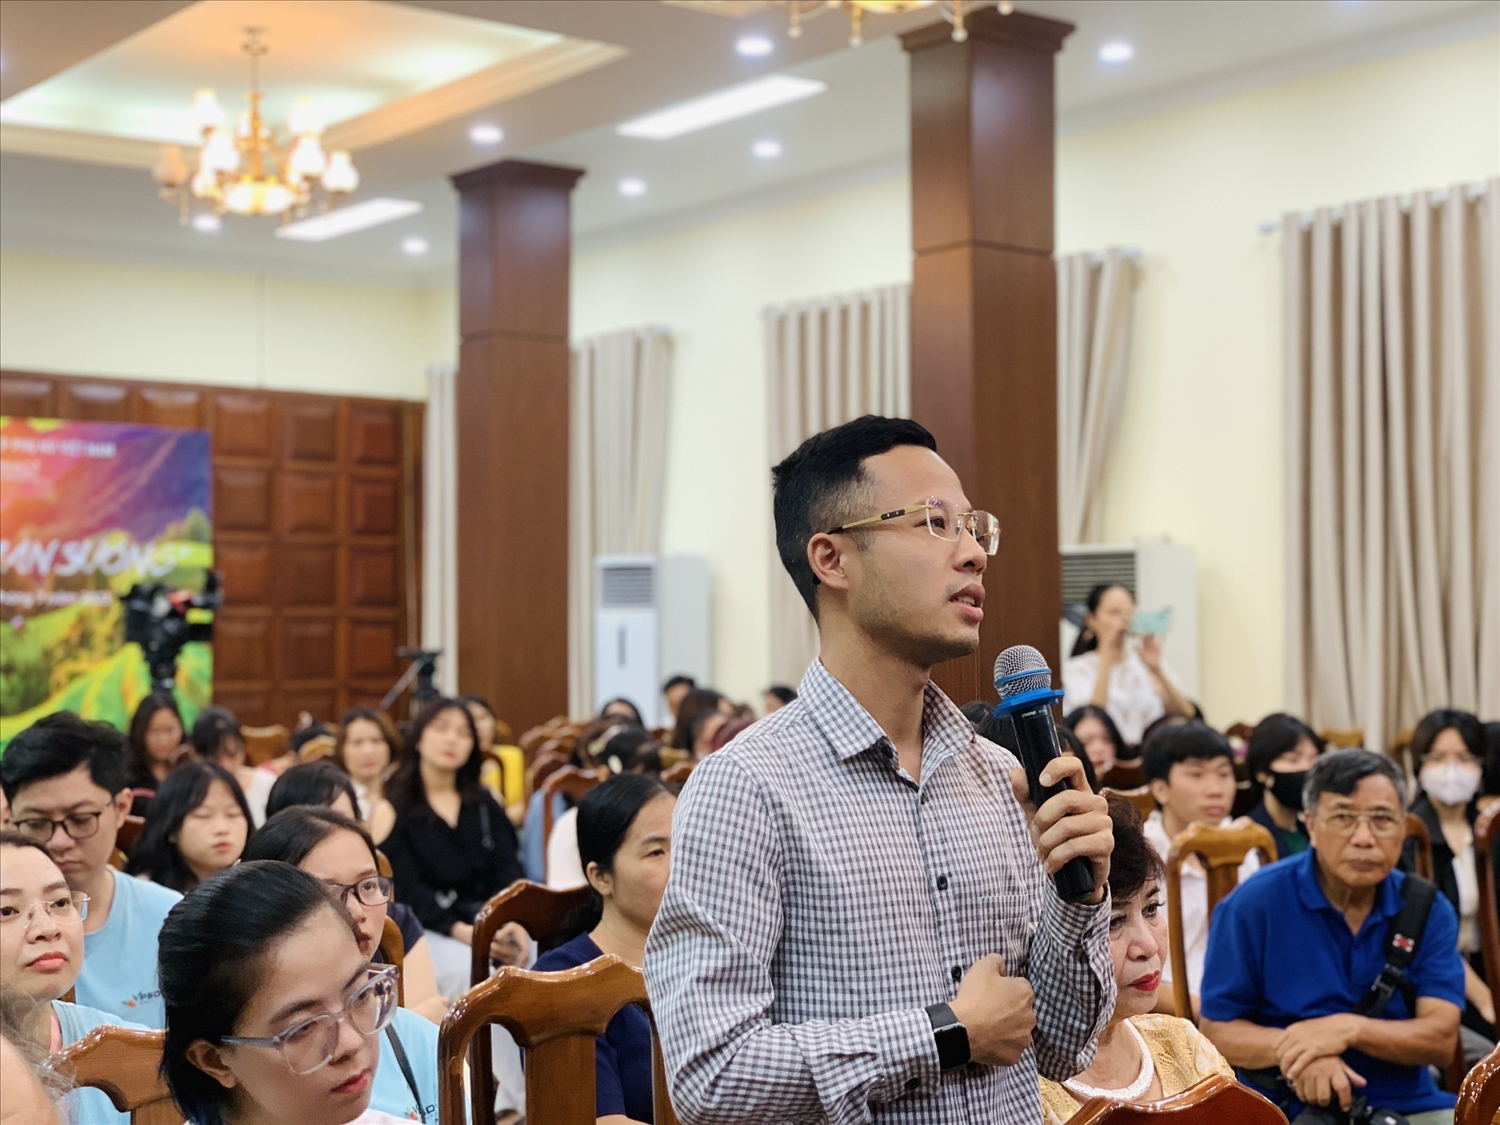 Ở góc độ những người làm truyền thông, theo phóng viên Cao Tuấn Ninh, cần tuyên truyền nhiều hơn các chương trình, chính sách phát triển kinh tế - xã hội vùng đồng bào DTTS, từng bước nâng cao nhận thức của đồng bào DTTS và miền núi.